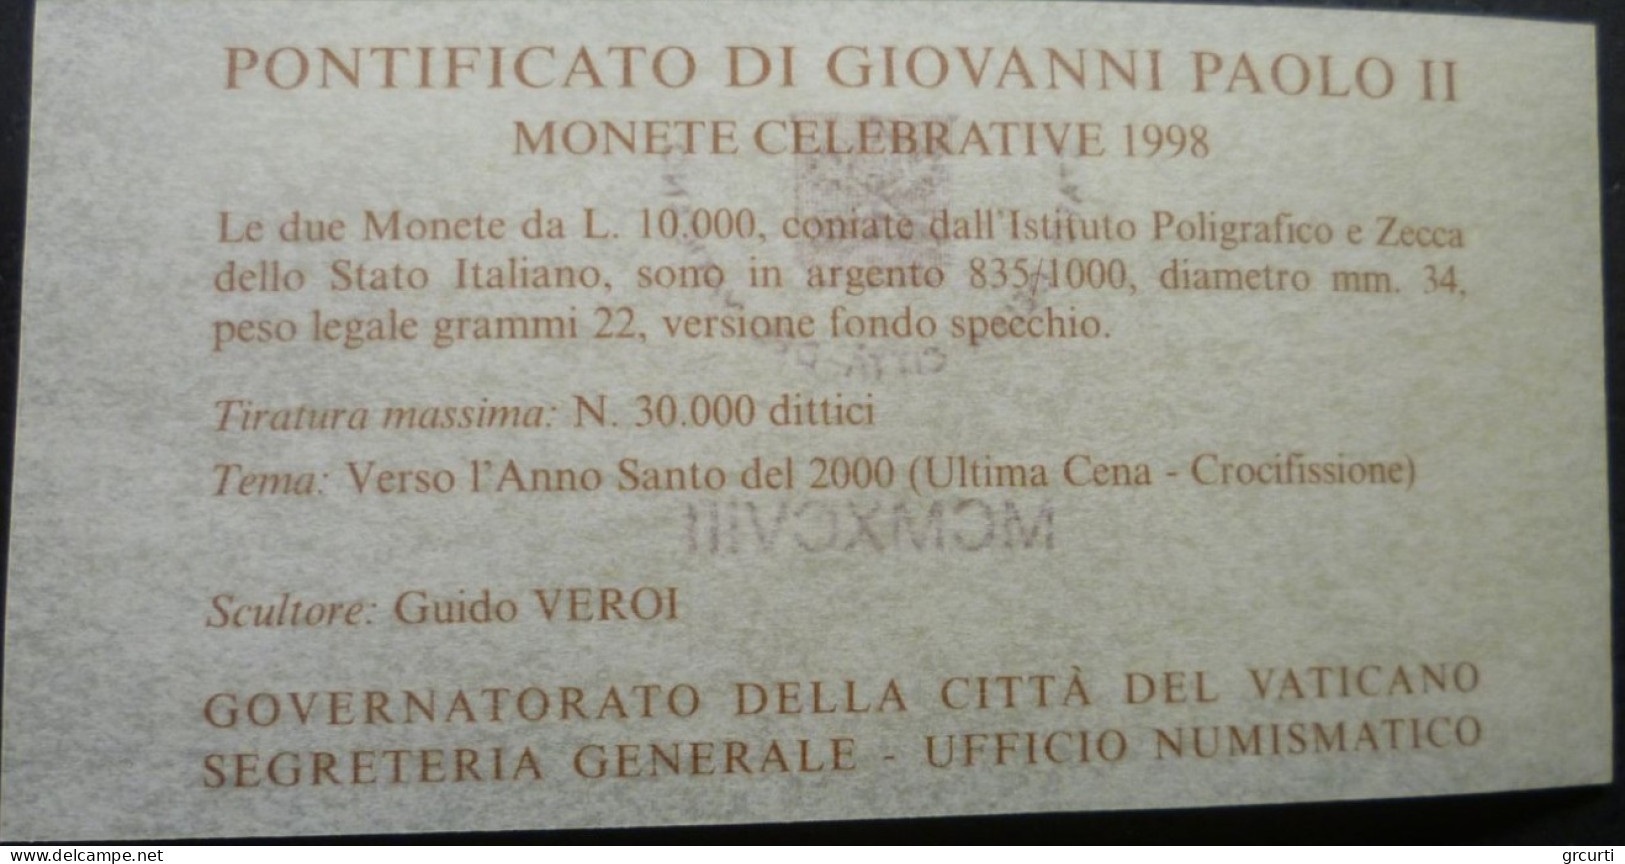 Vaticano - 2 x 10.000 Lire 1998 - Verso l'Anno Santo del 2000 - Gig# 336 - KM# 290-291